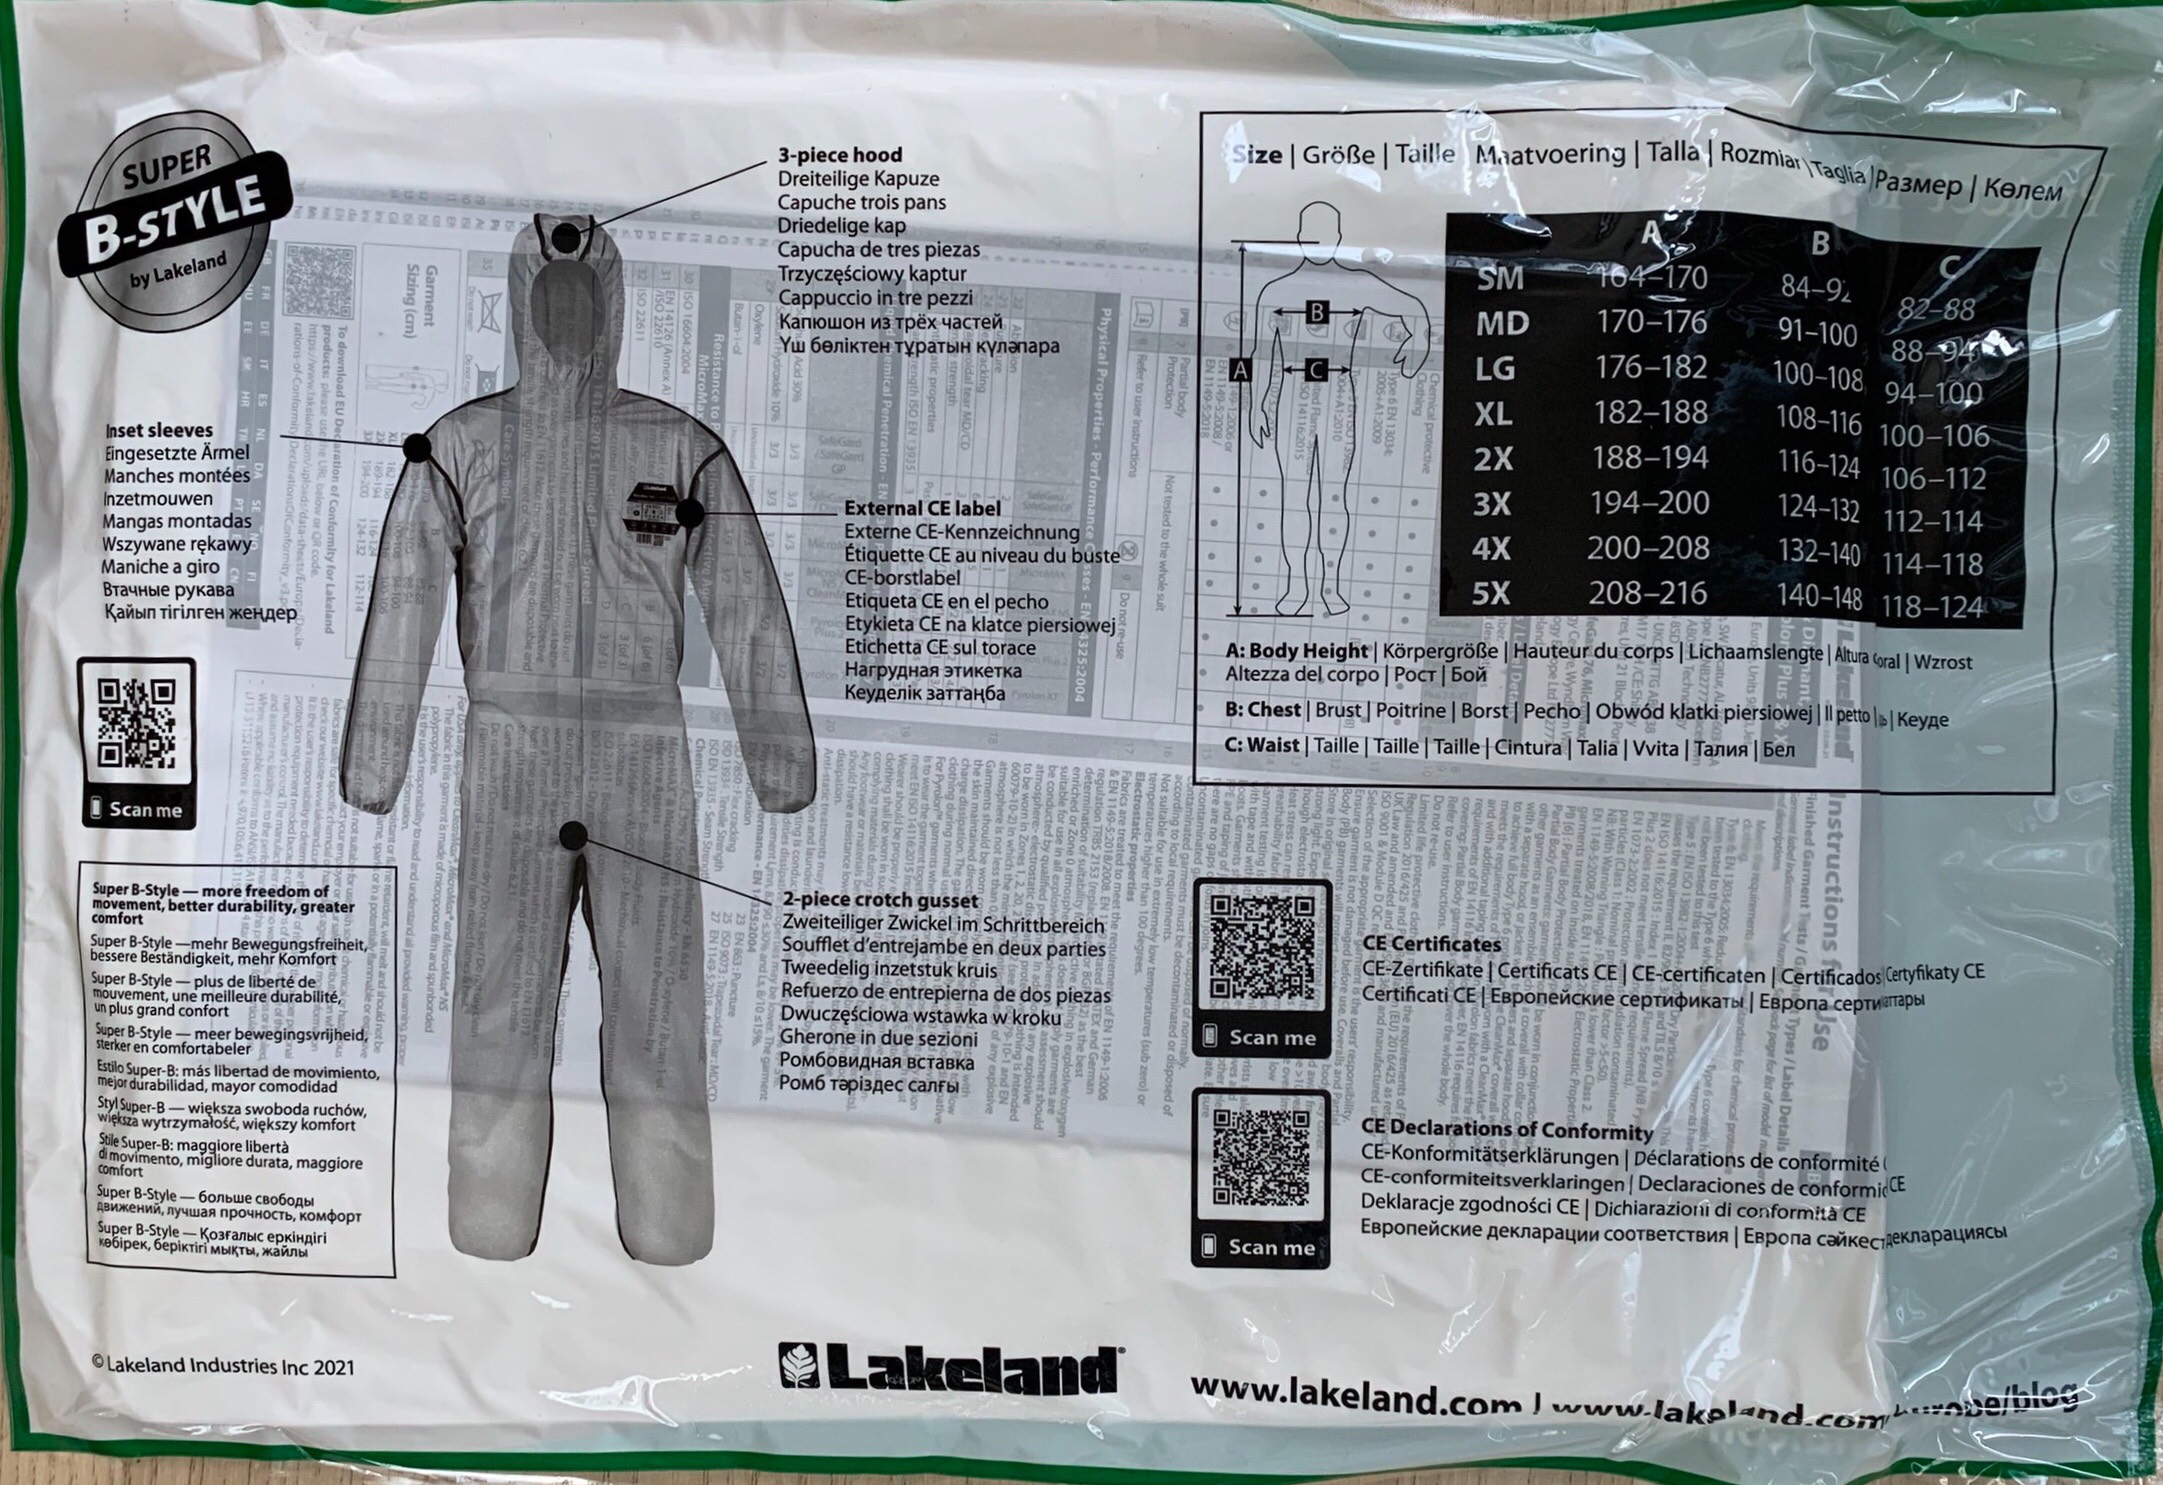 Quần Áo Chống Hóa Chất Lakeland - MicroMax NS cấp độ 4 (tặng 1 khẩu trang 9105, 1 đôi găng tay, 1 bọc giày)